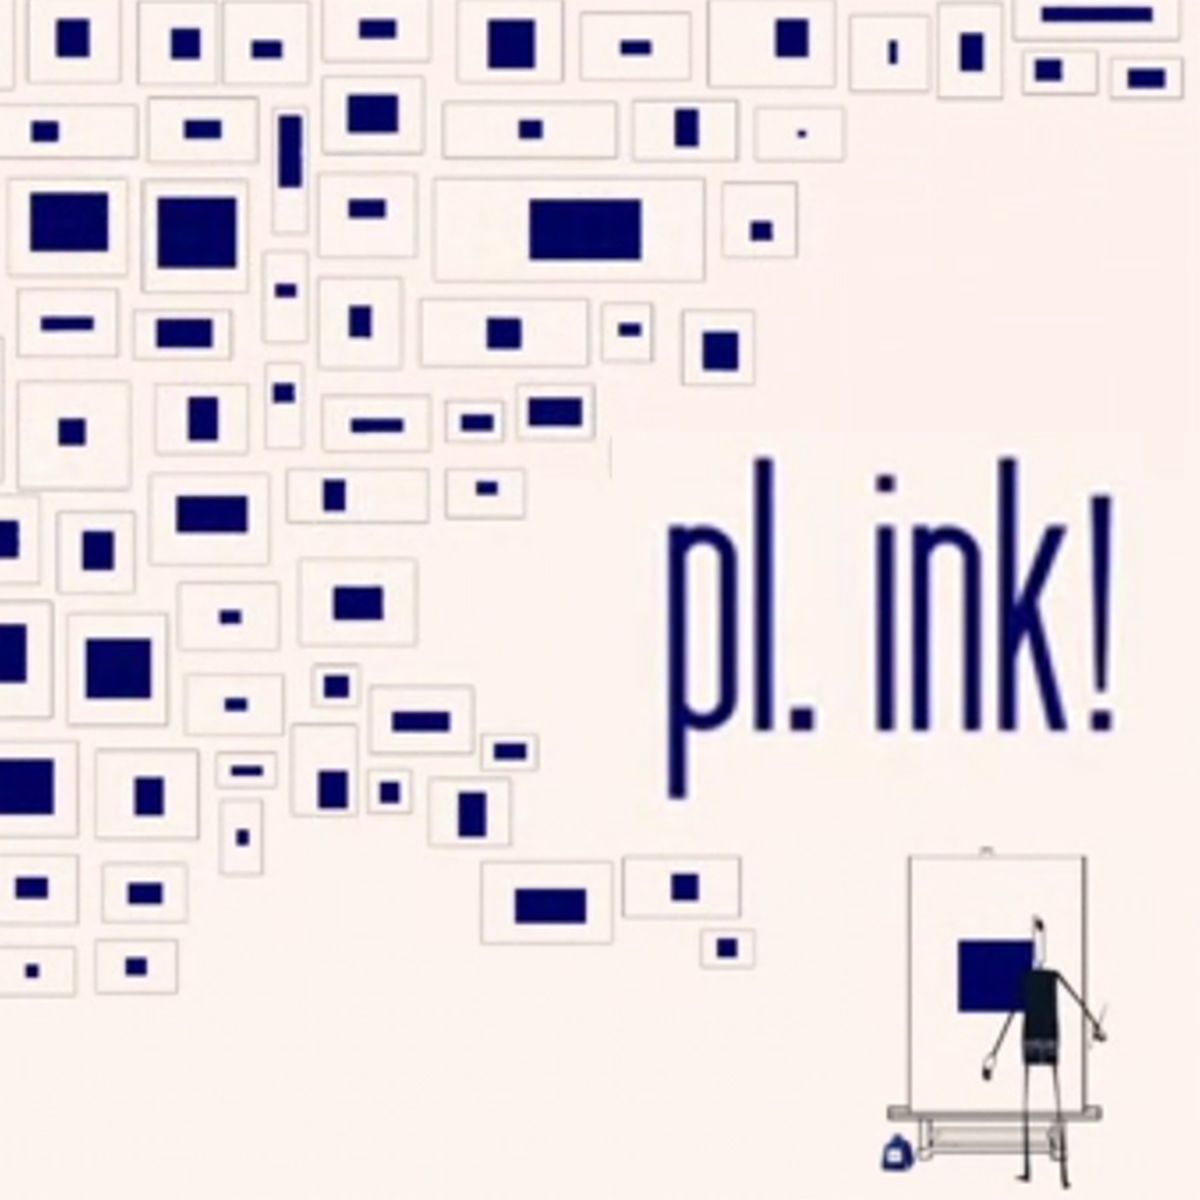 Pl. Ink ! | 